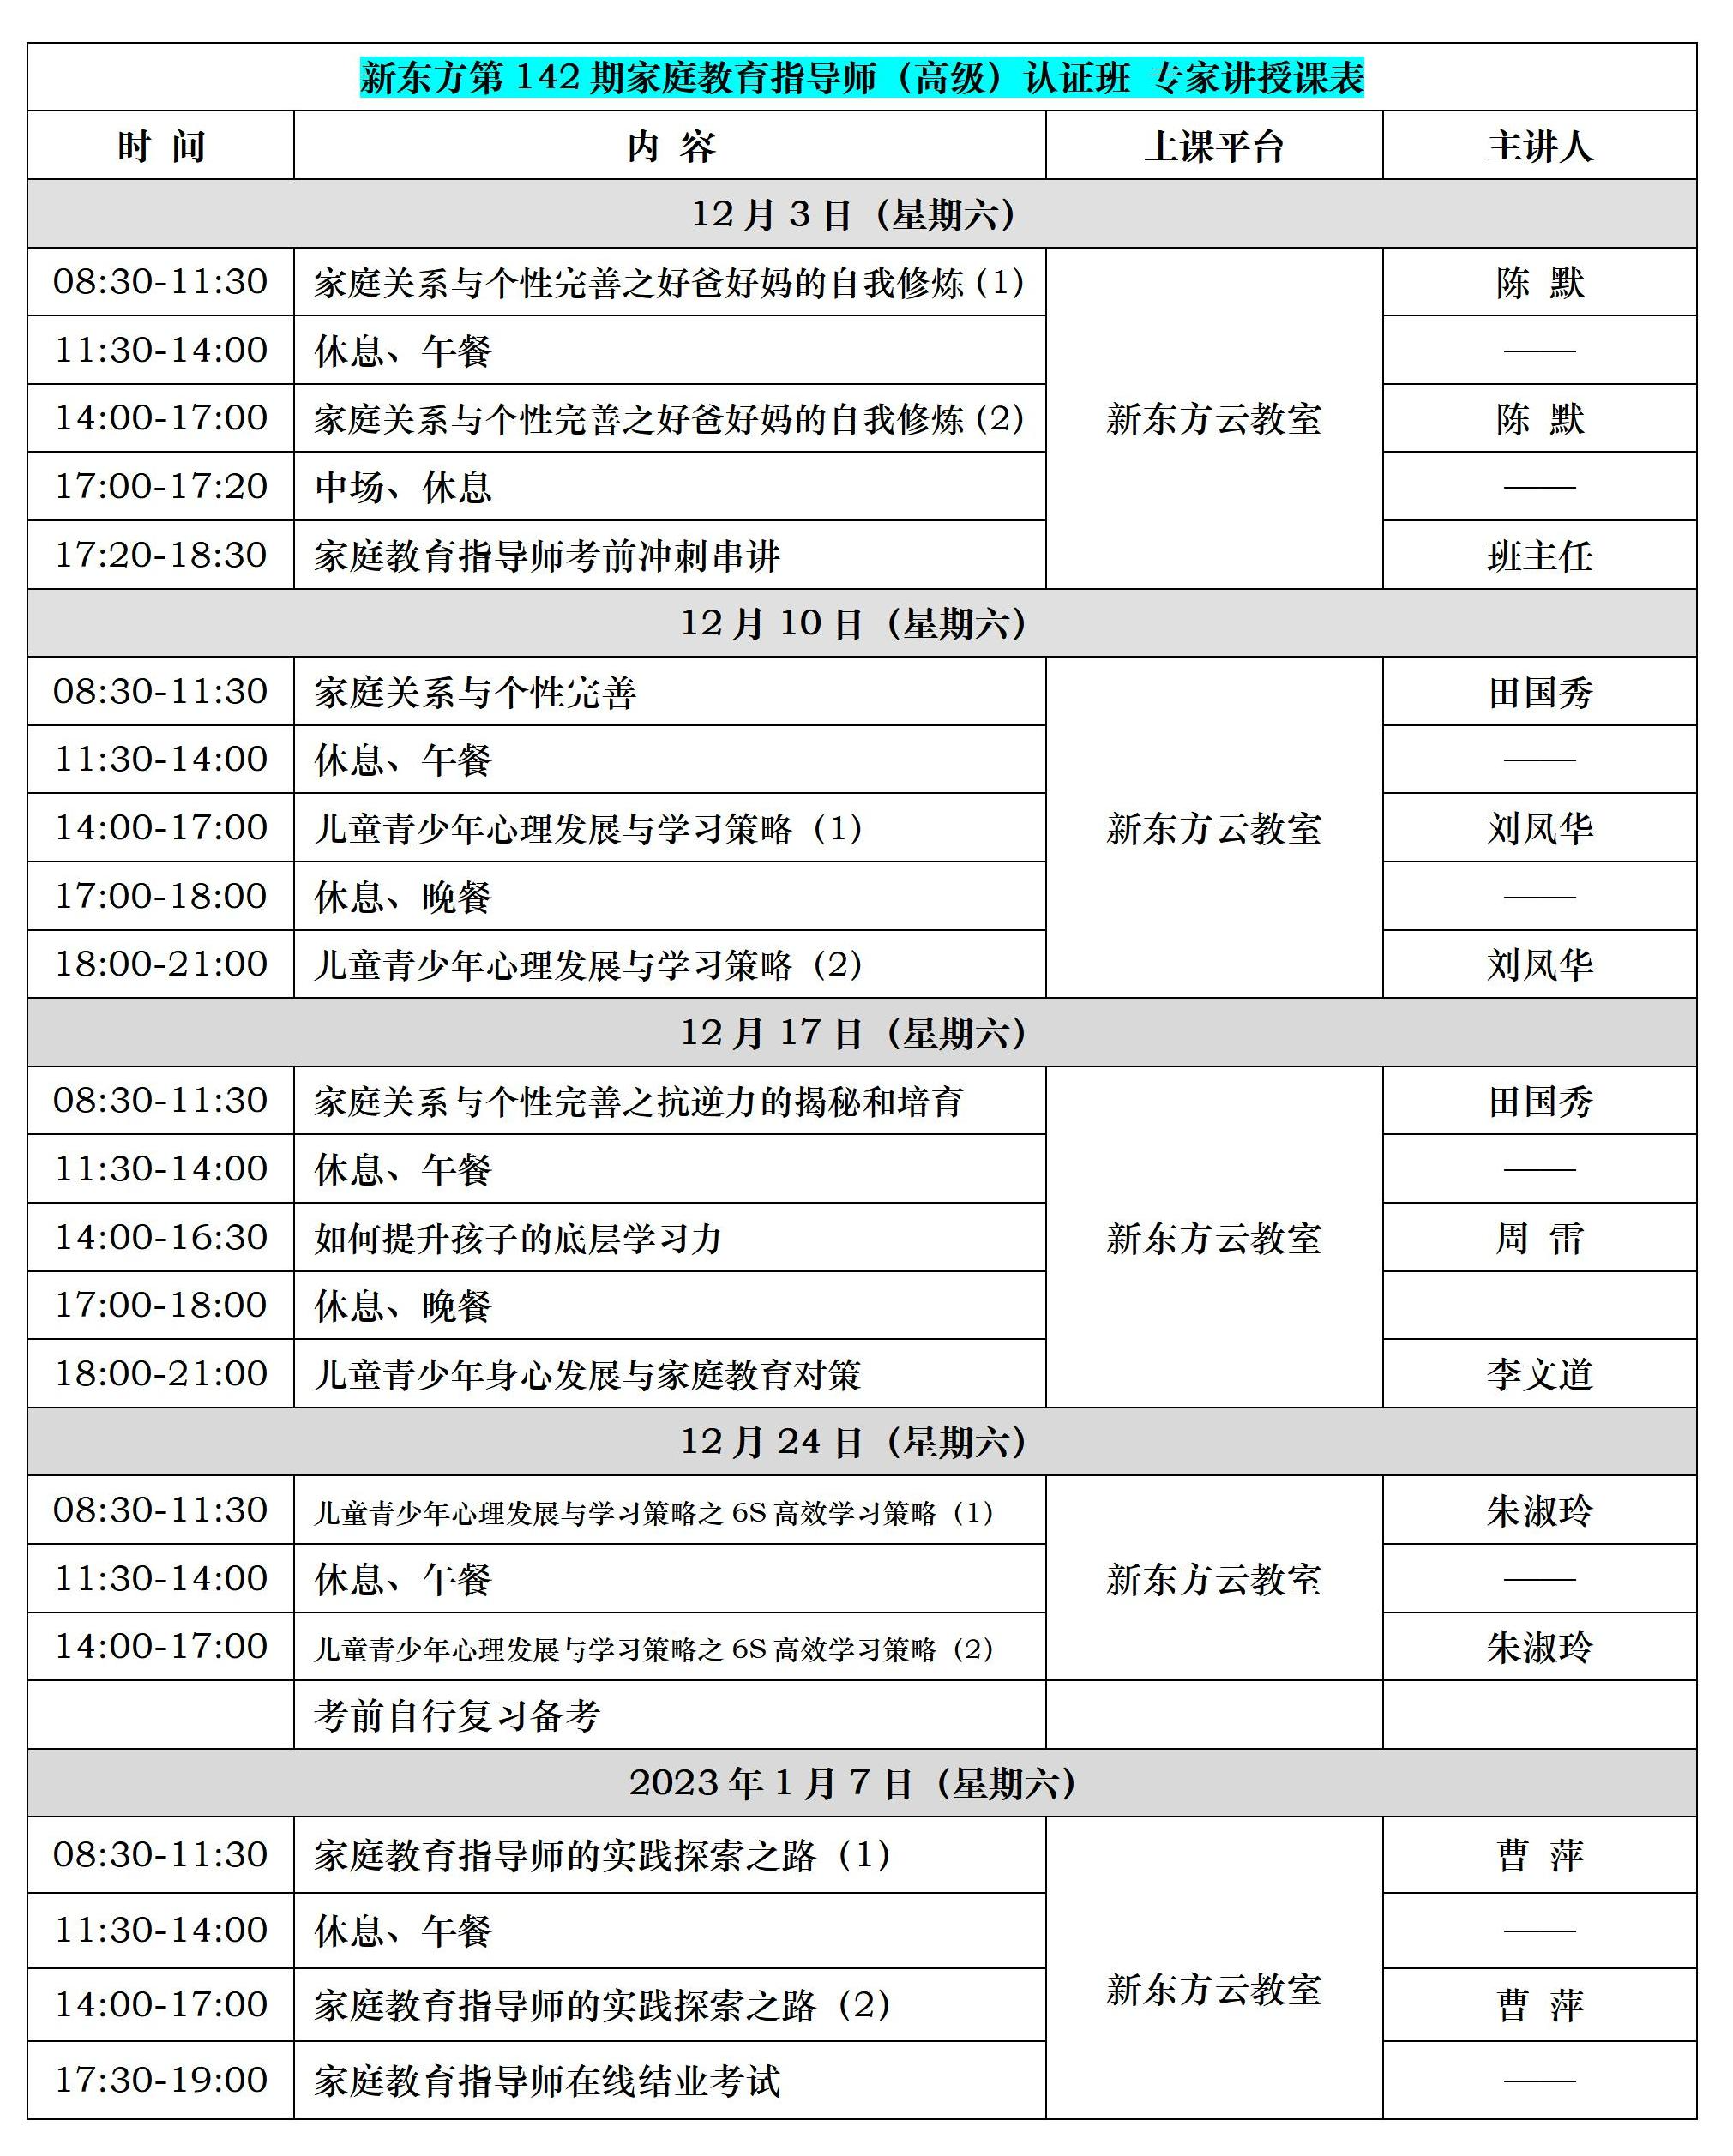 新东方第142期高级指导师认证培训(12月3日至1月7日).png